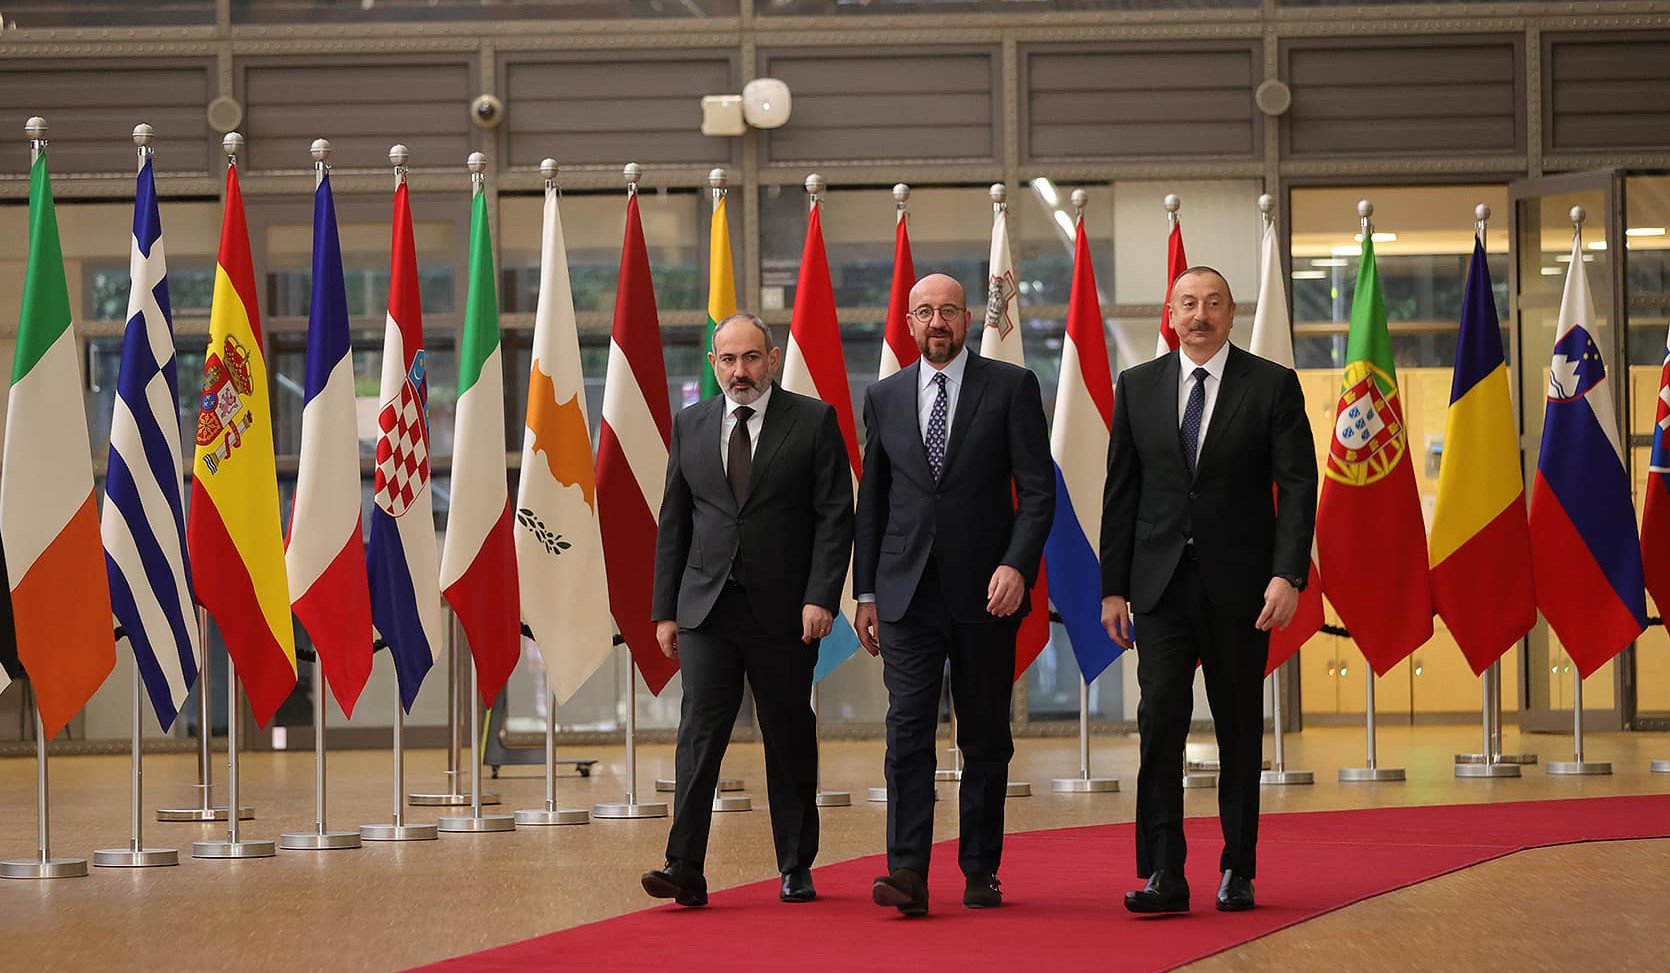 Եվրոպական խորհուրդը հաստատել է Հայաստանի և Ադրբեջանի ղեկավարների հանդիպումը մայիսի 14-ին Բրյուսելում